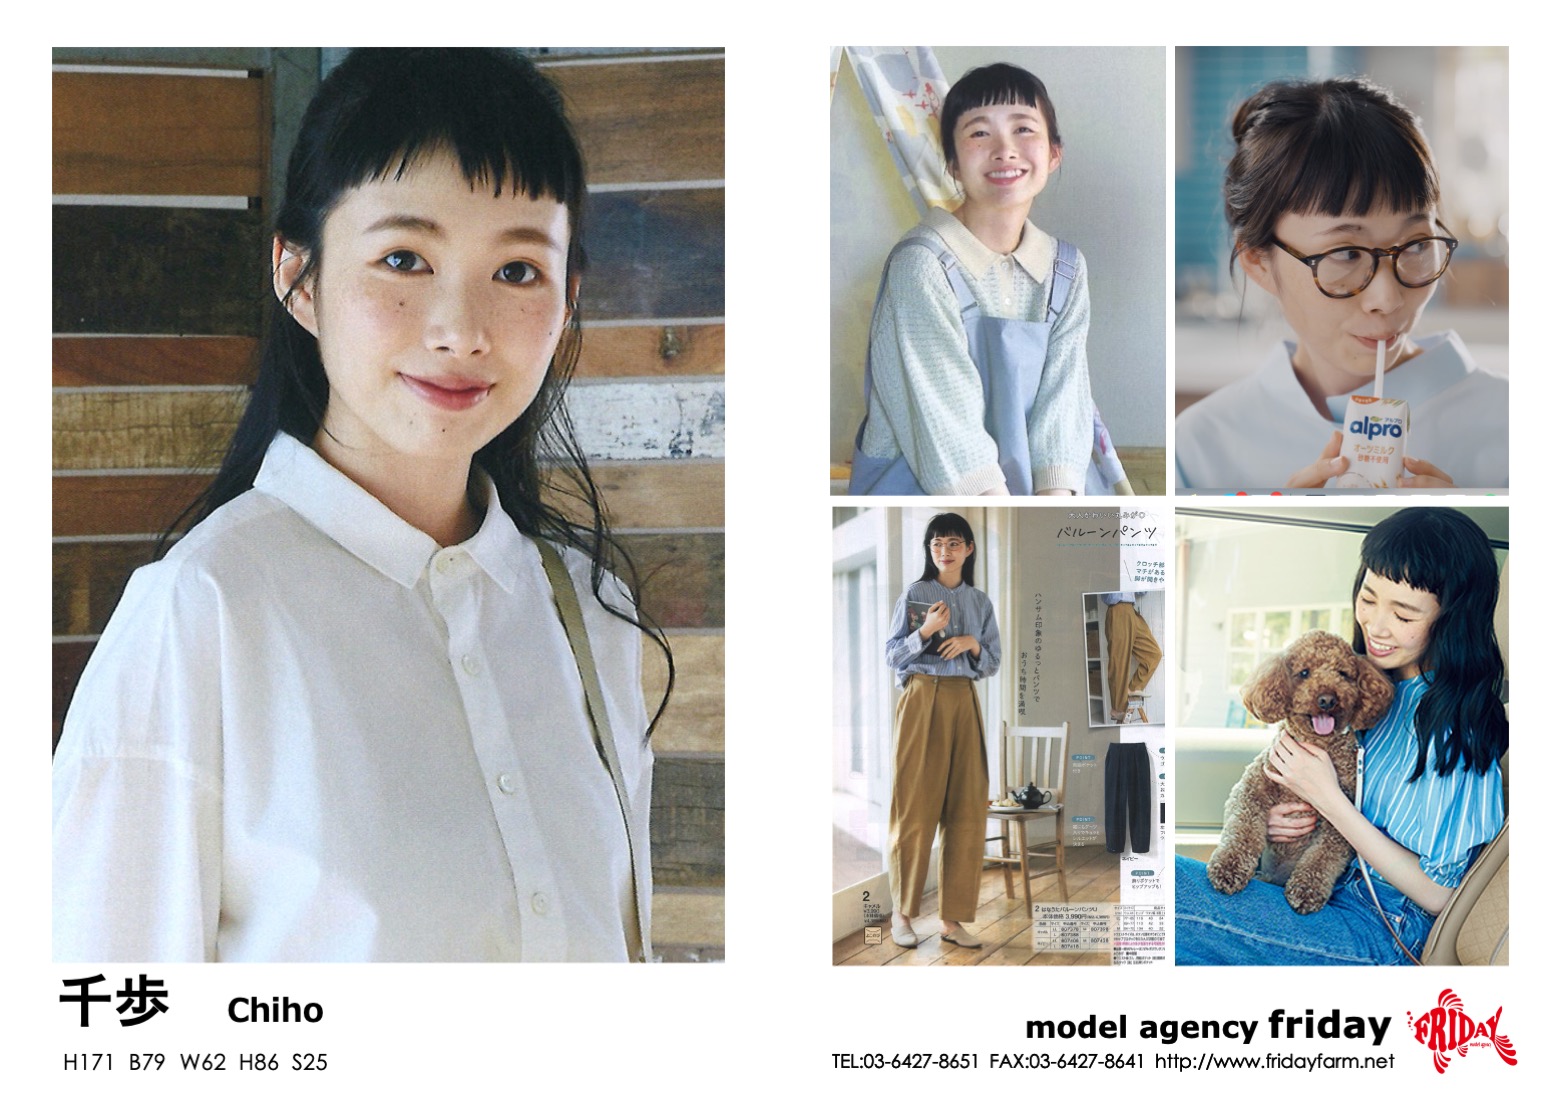 千歩 - Chiho | model agency friday